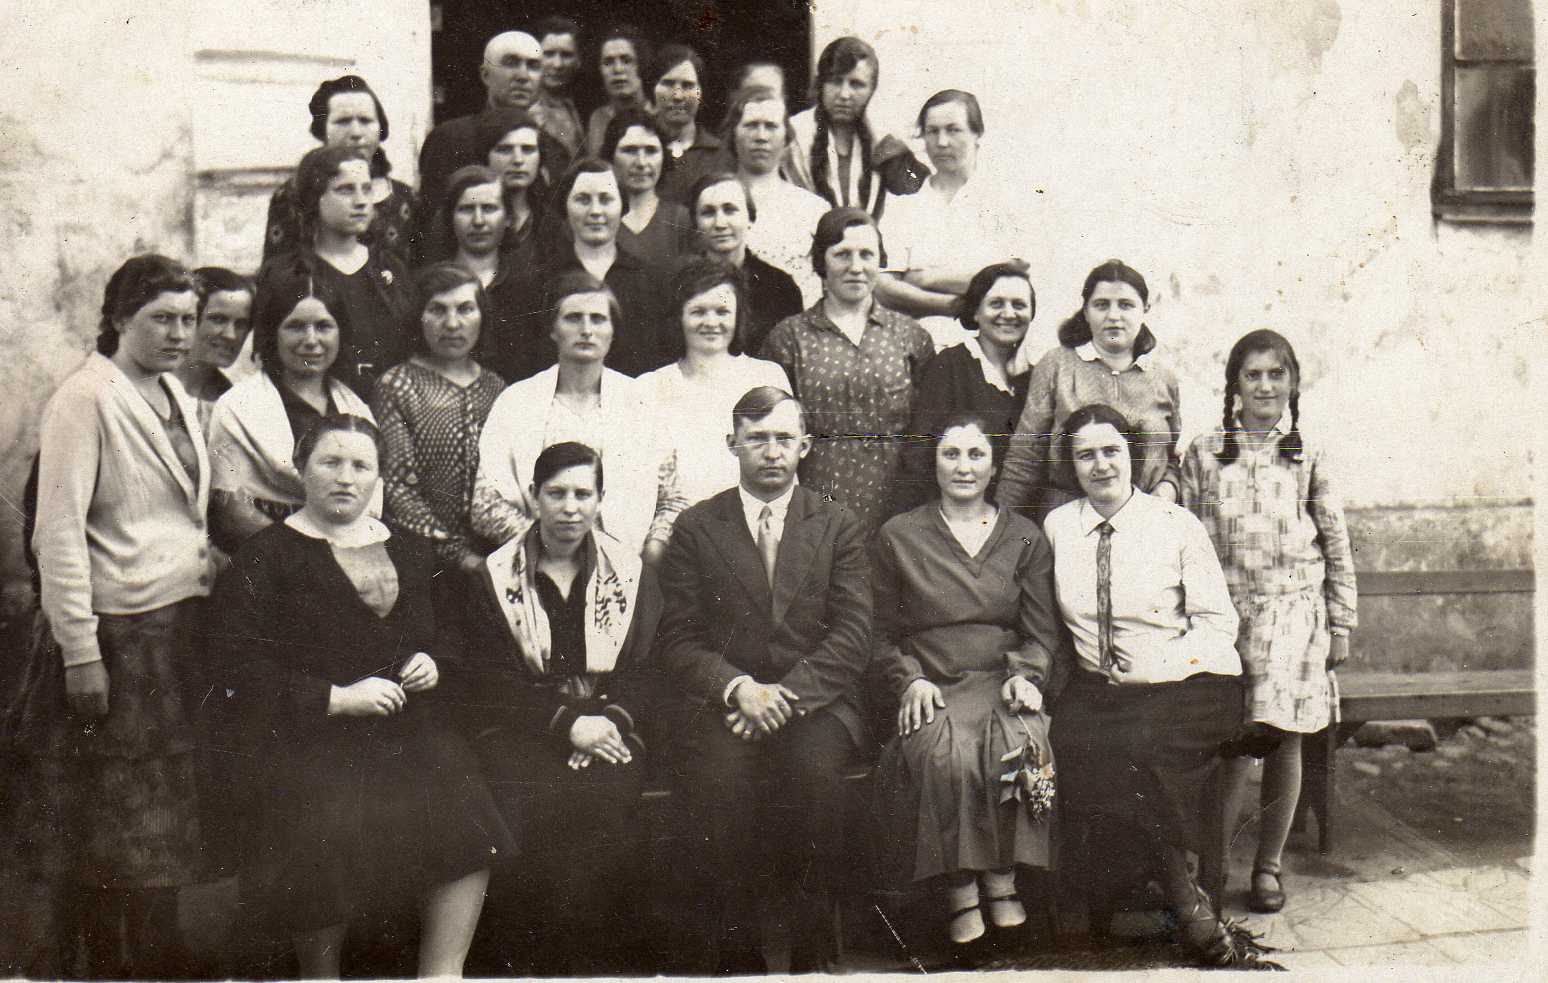 Būsimasis profesorius, agronomas Petras Vasinauskas (pirmoje eilėje trečias iš kairės) su žemės ūkio klasės kursantėmis Tauragės rajone. Apie 1931 m.